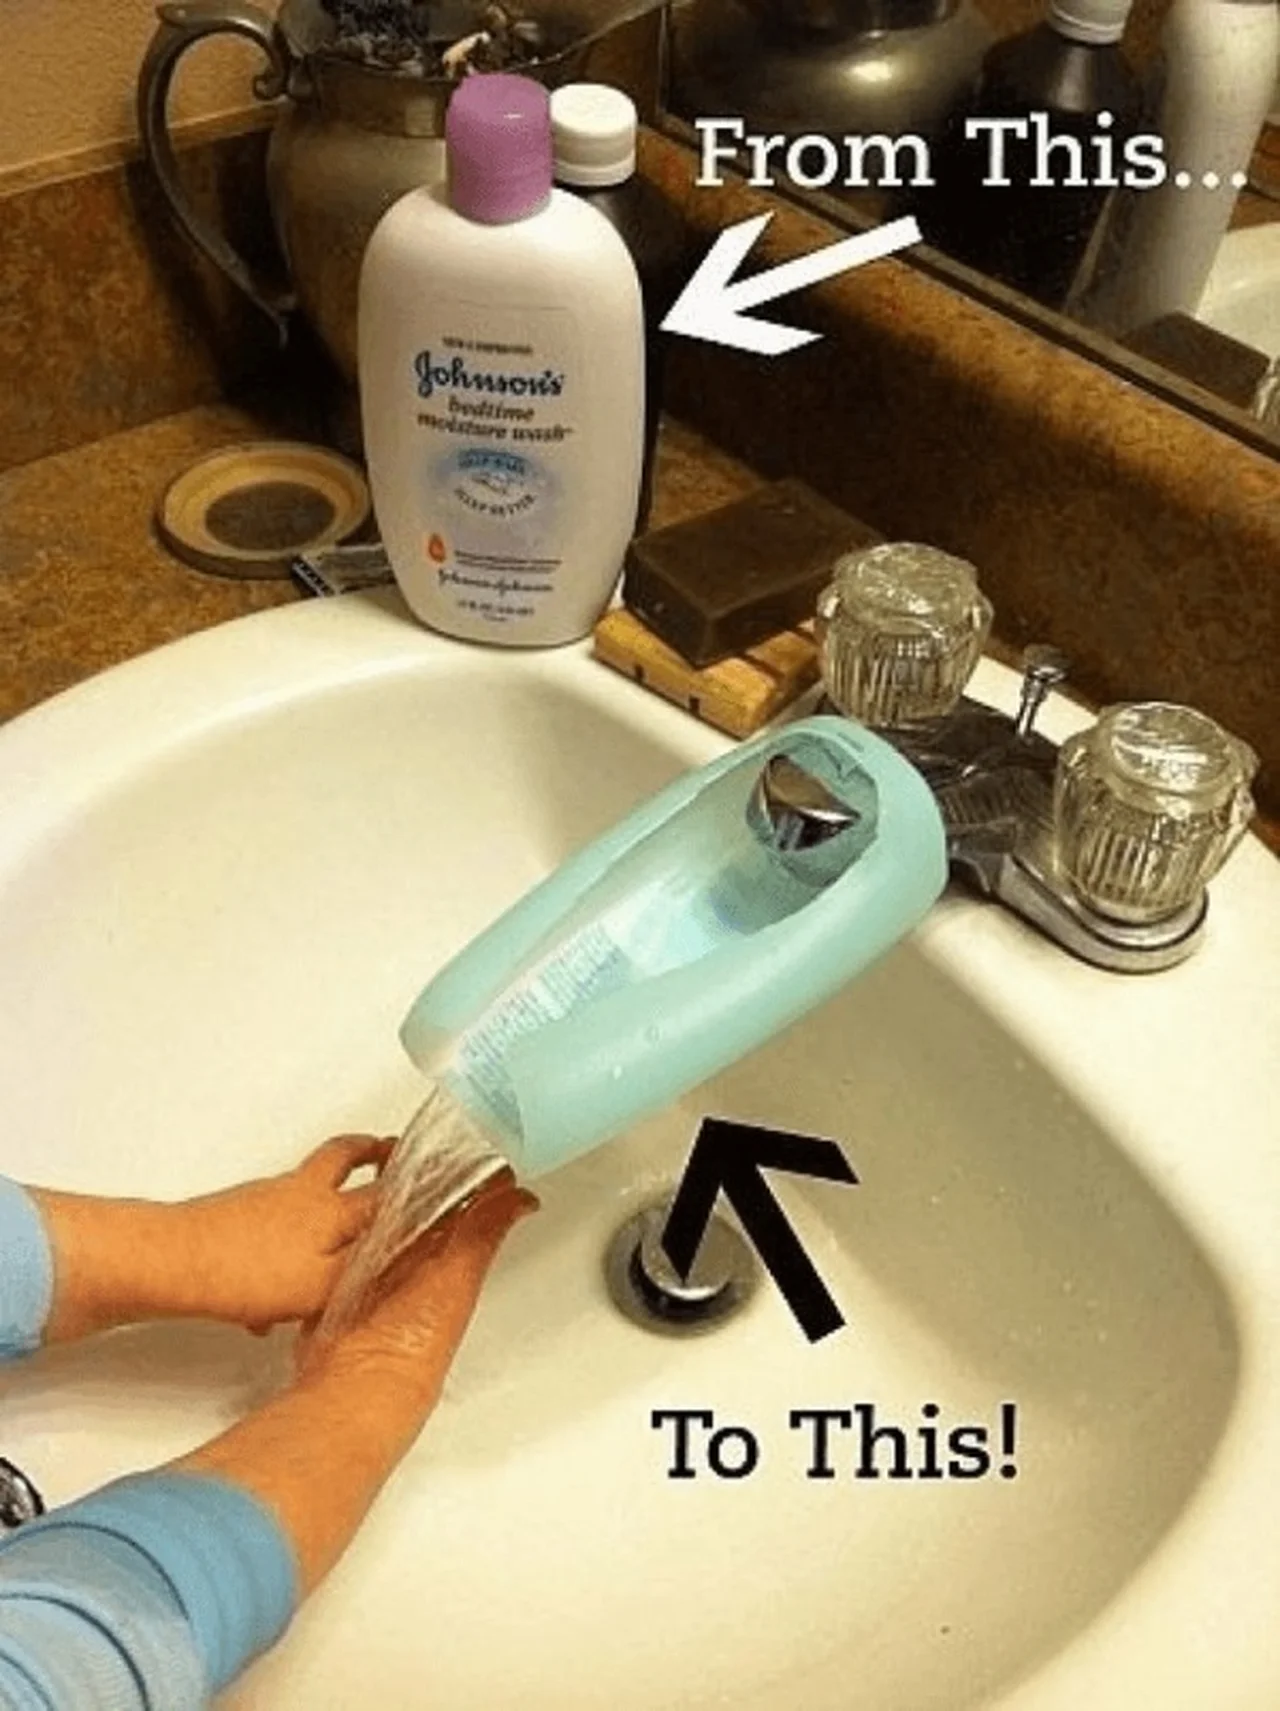 Użyj opakowania po szamponie lub oliwce, aby ułatwić dziecku mycie rąk.